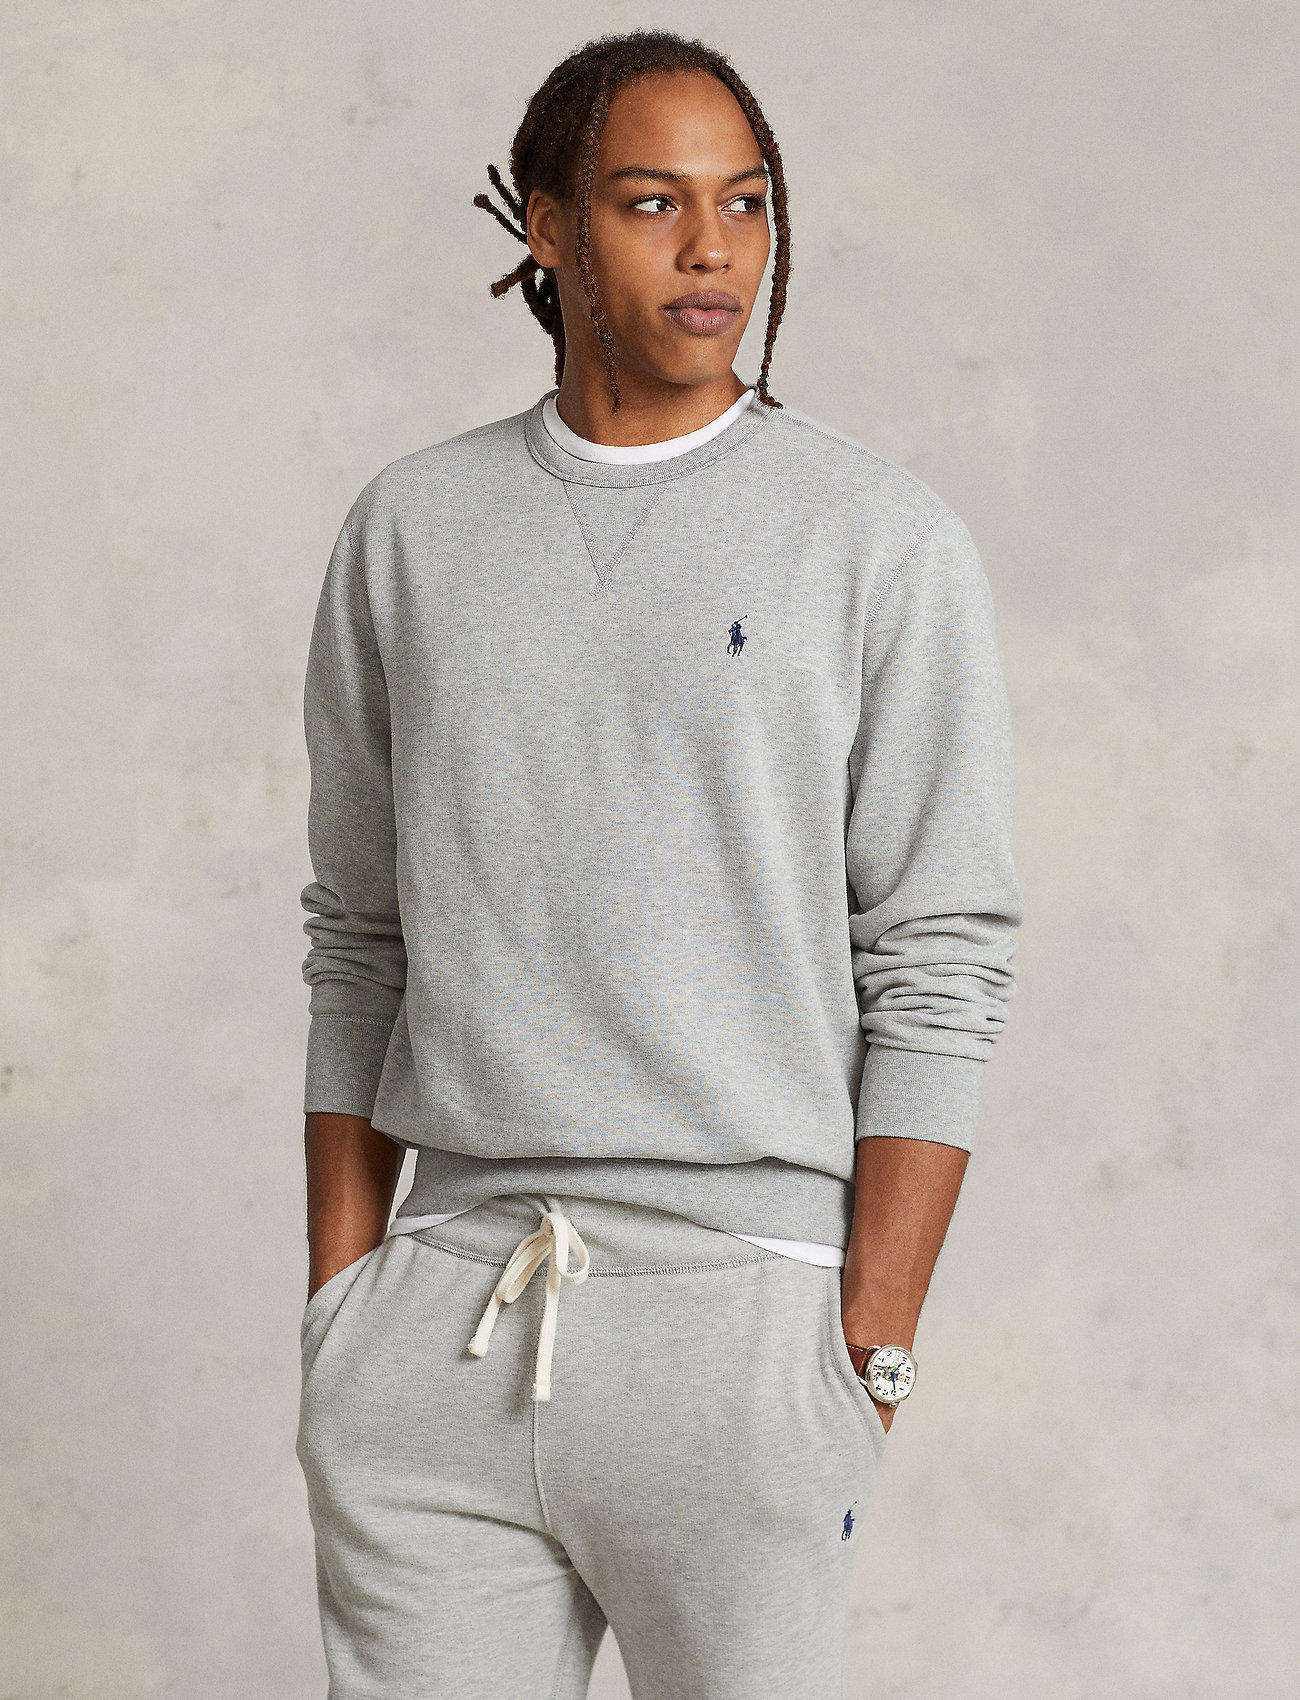 Polo Ralph Lauren - The RL Fleece Sweatshirt - truien - andover heather - 0